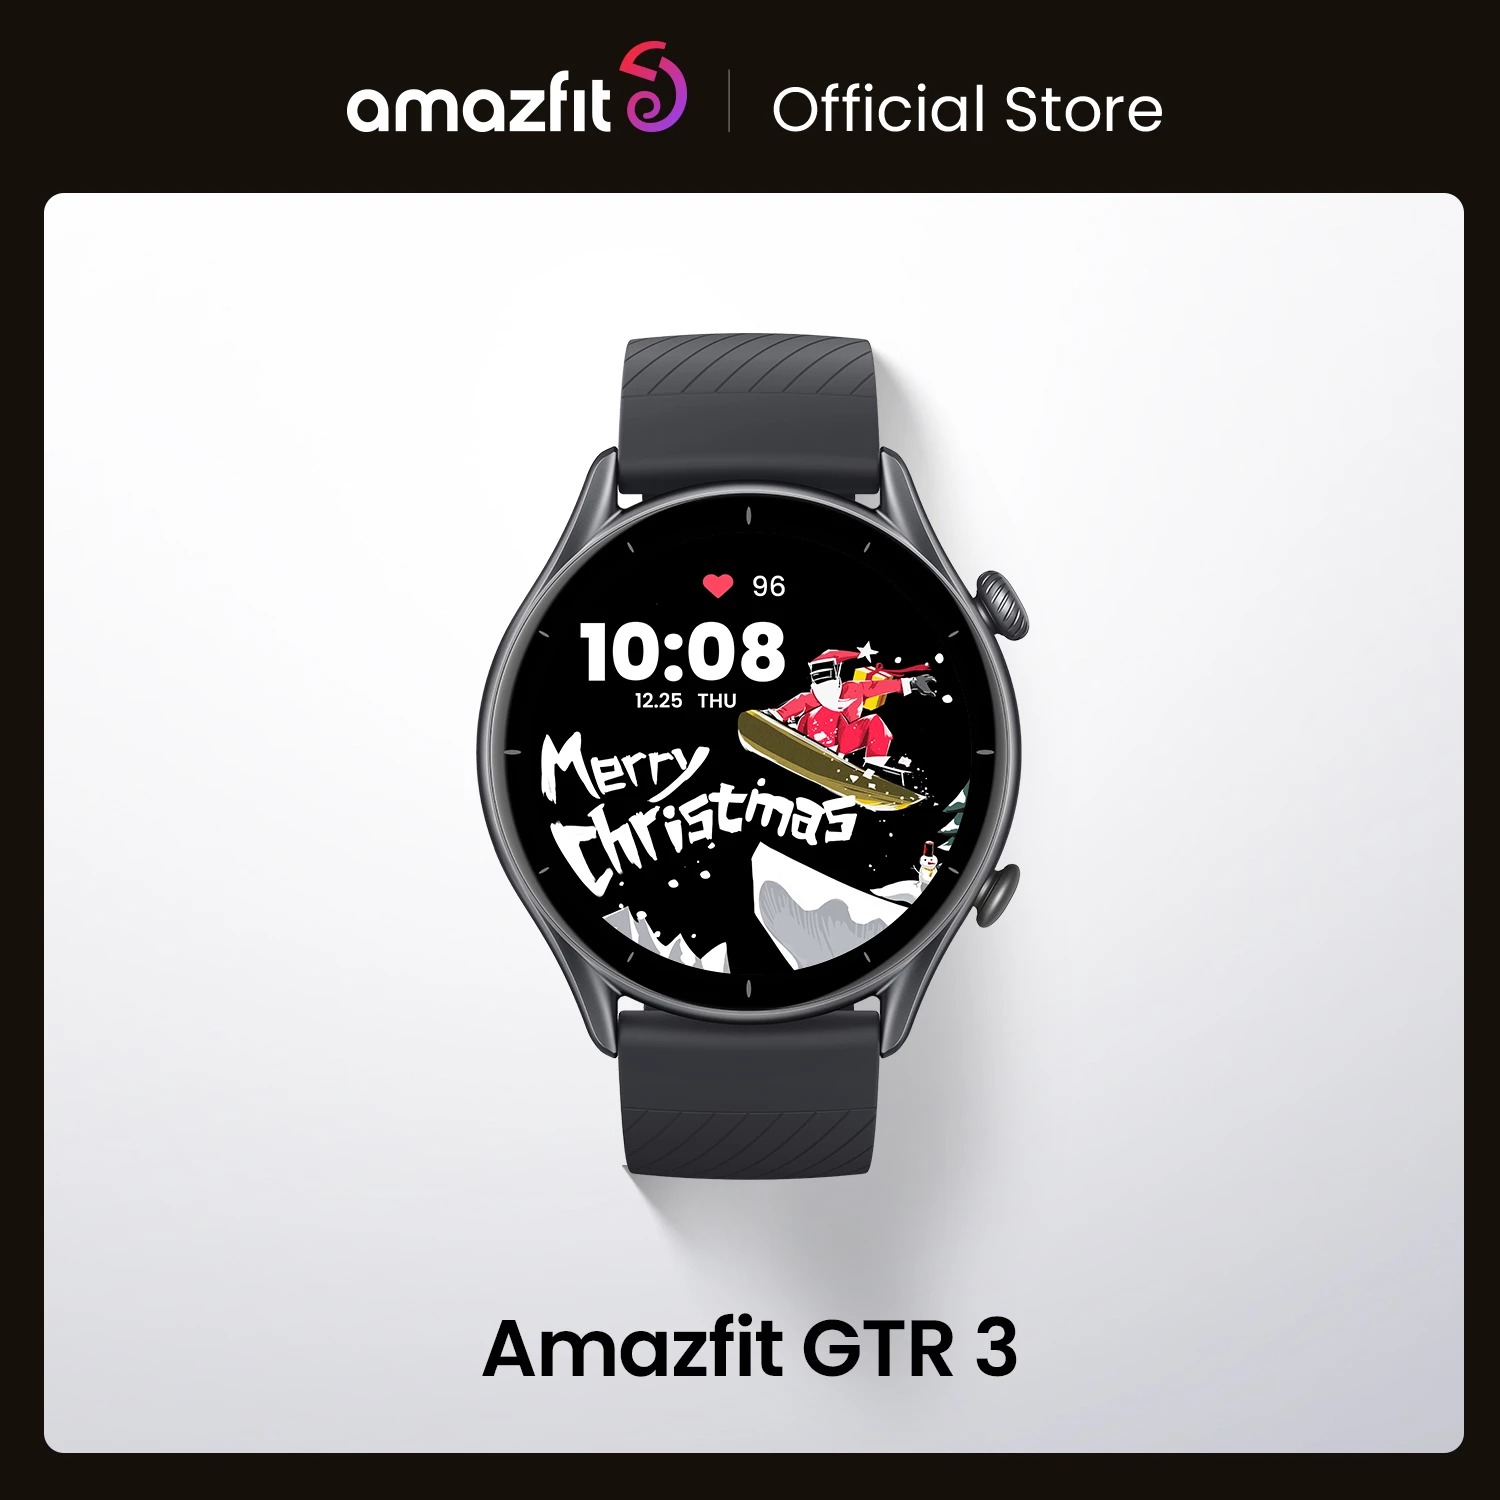 Compre agora: Smartwatch Amazfit GTR 3 sai com 49% de desconto no AliExpress